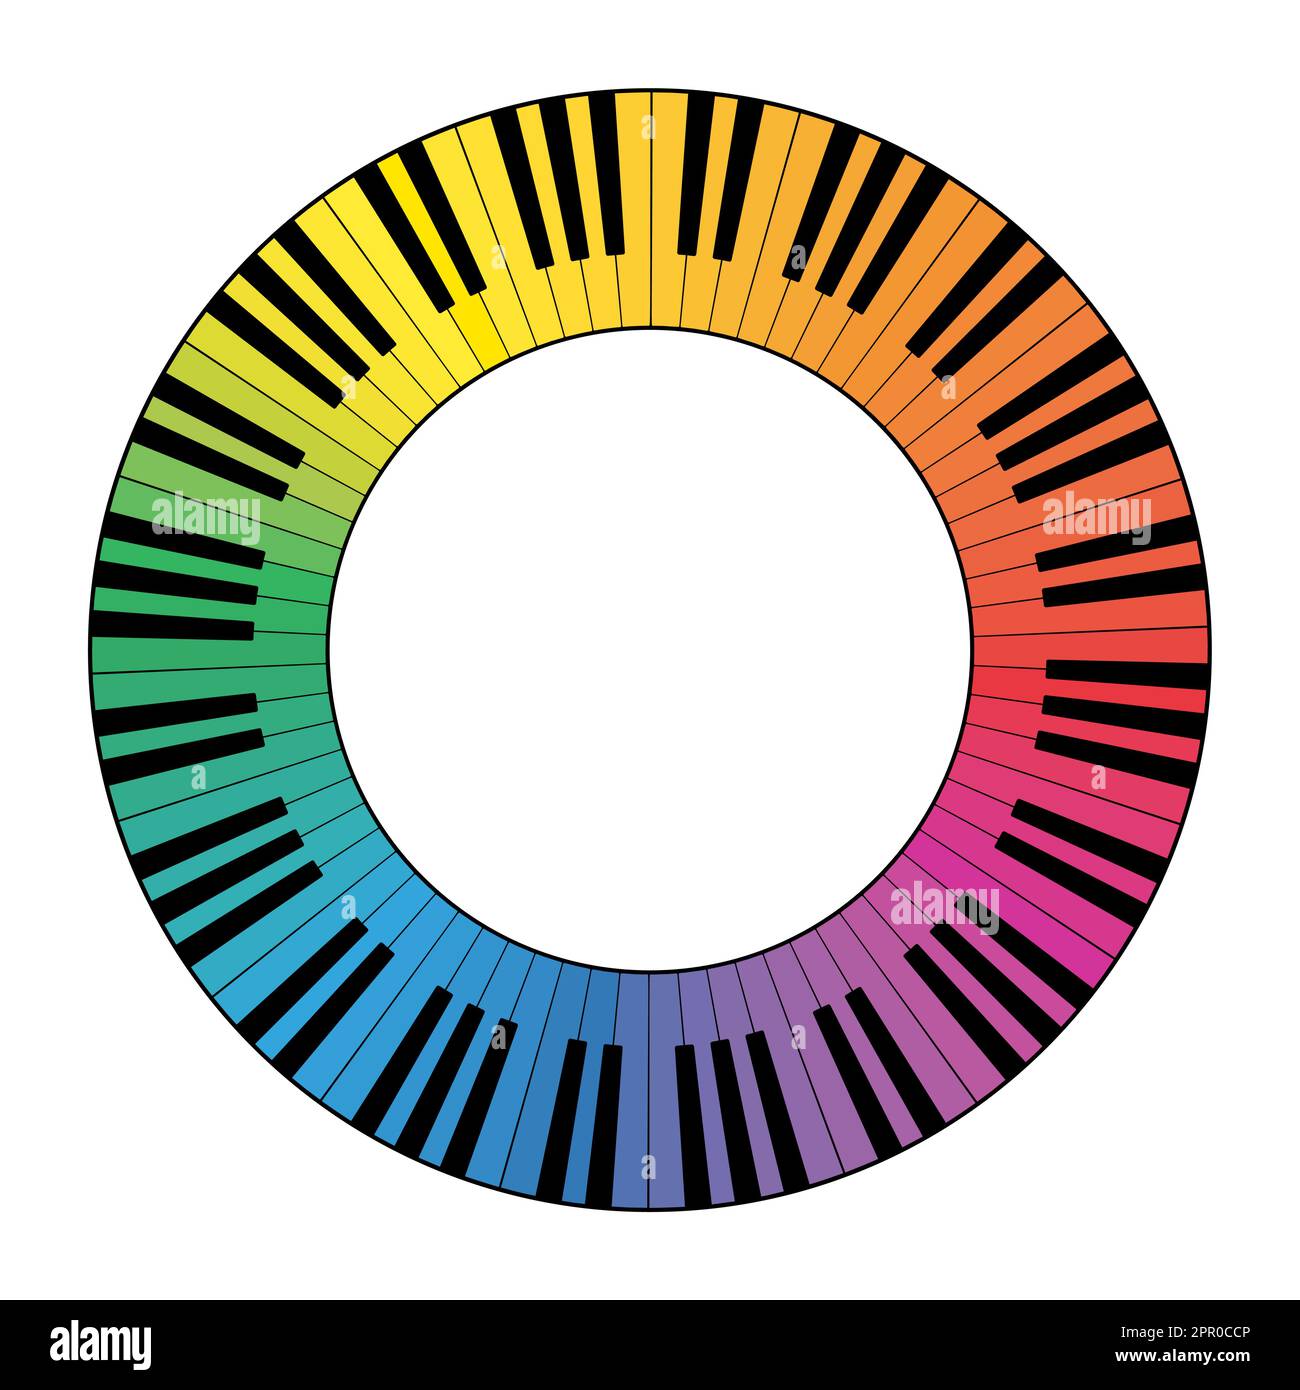 Clavier musical multicolore cadre circulaire, composé d'octaves connectées Illustration de Vecteur